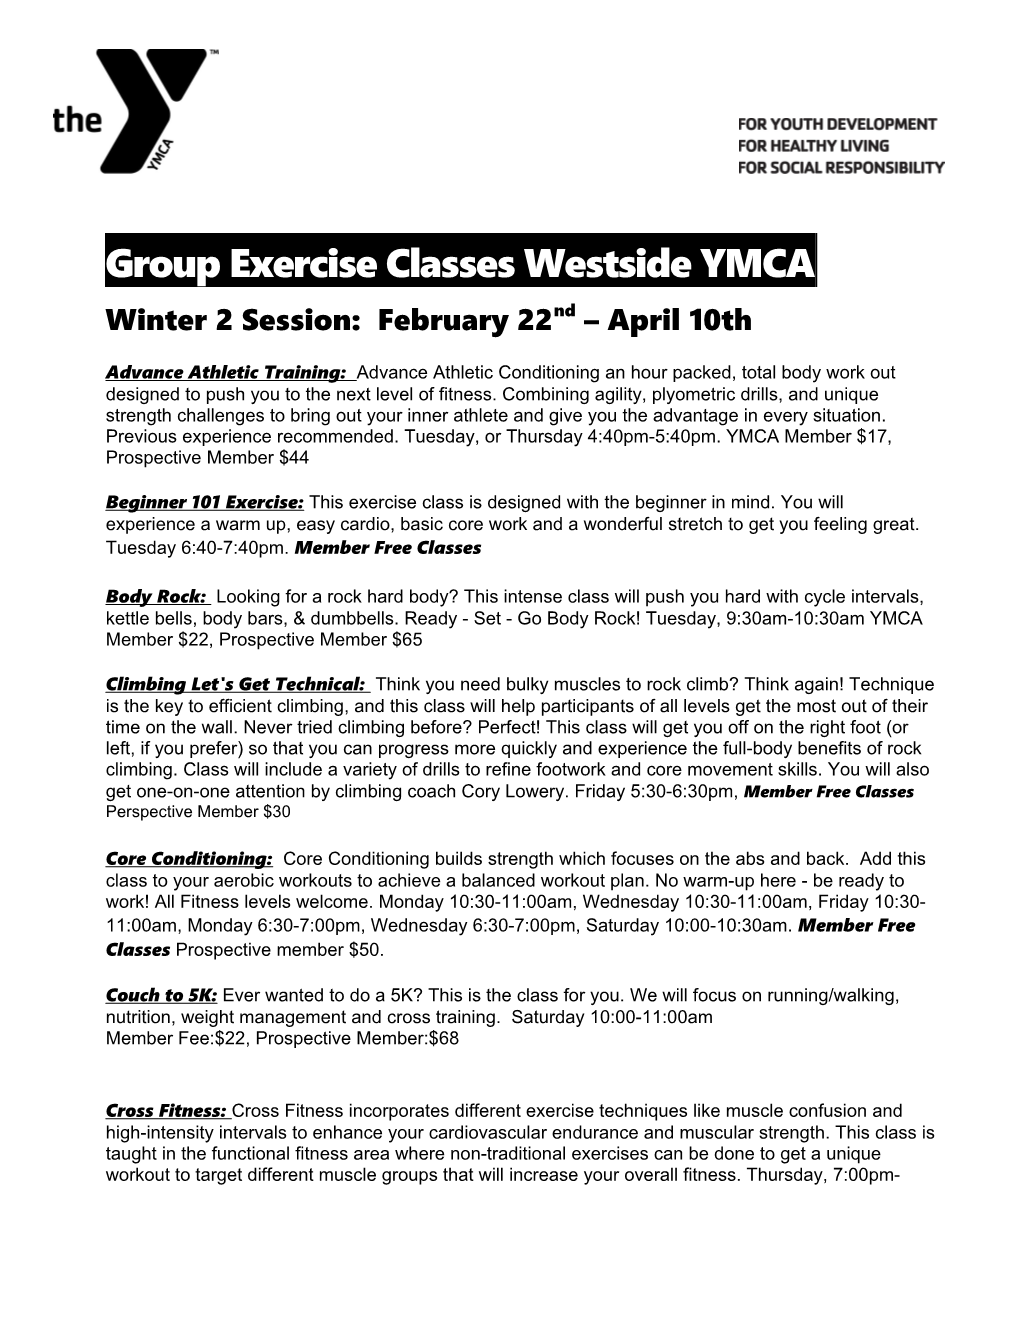 Groupexerciseclasses Westside YMCA